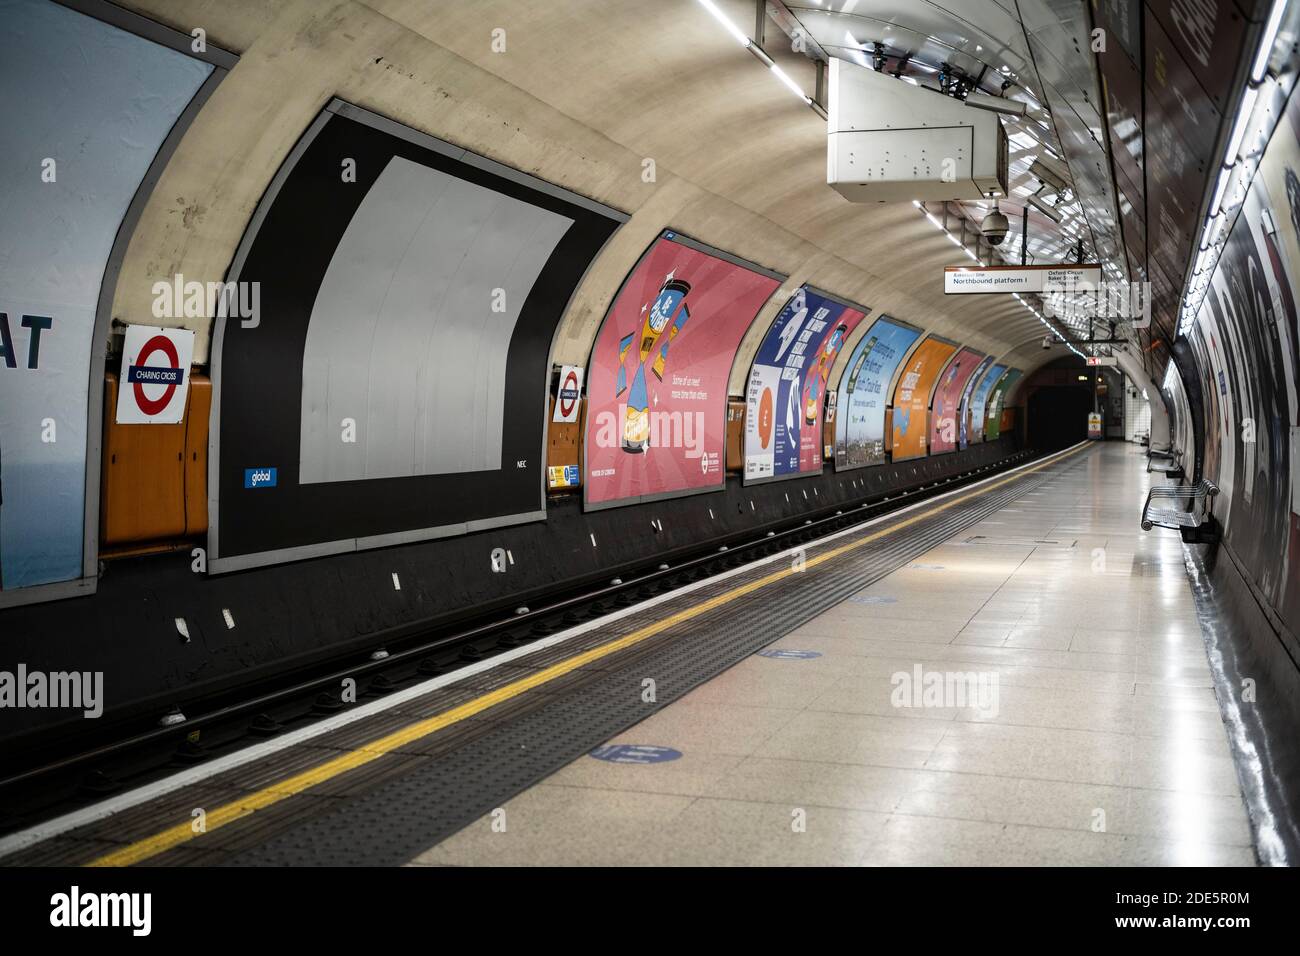 Ruhige, leere und menschenleere Londoner U-Bahn-Station Plattform in Coronavirus Covid-19 Pandemiesperre, während die öffentlichen Verkehrsmittel reduziert wurde ohne Menschen während des Reiseverbots Stockfoto